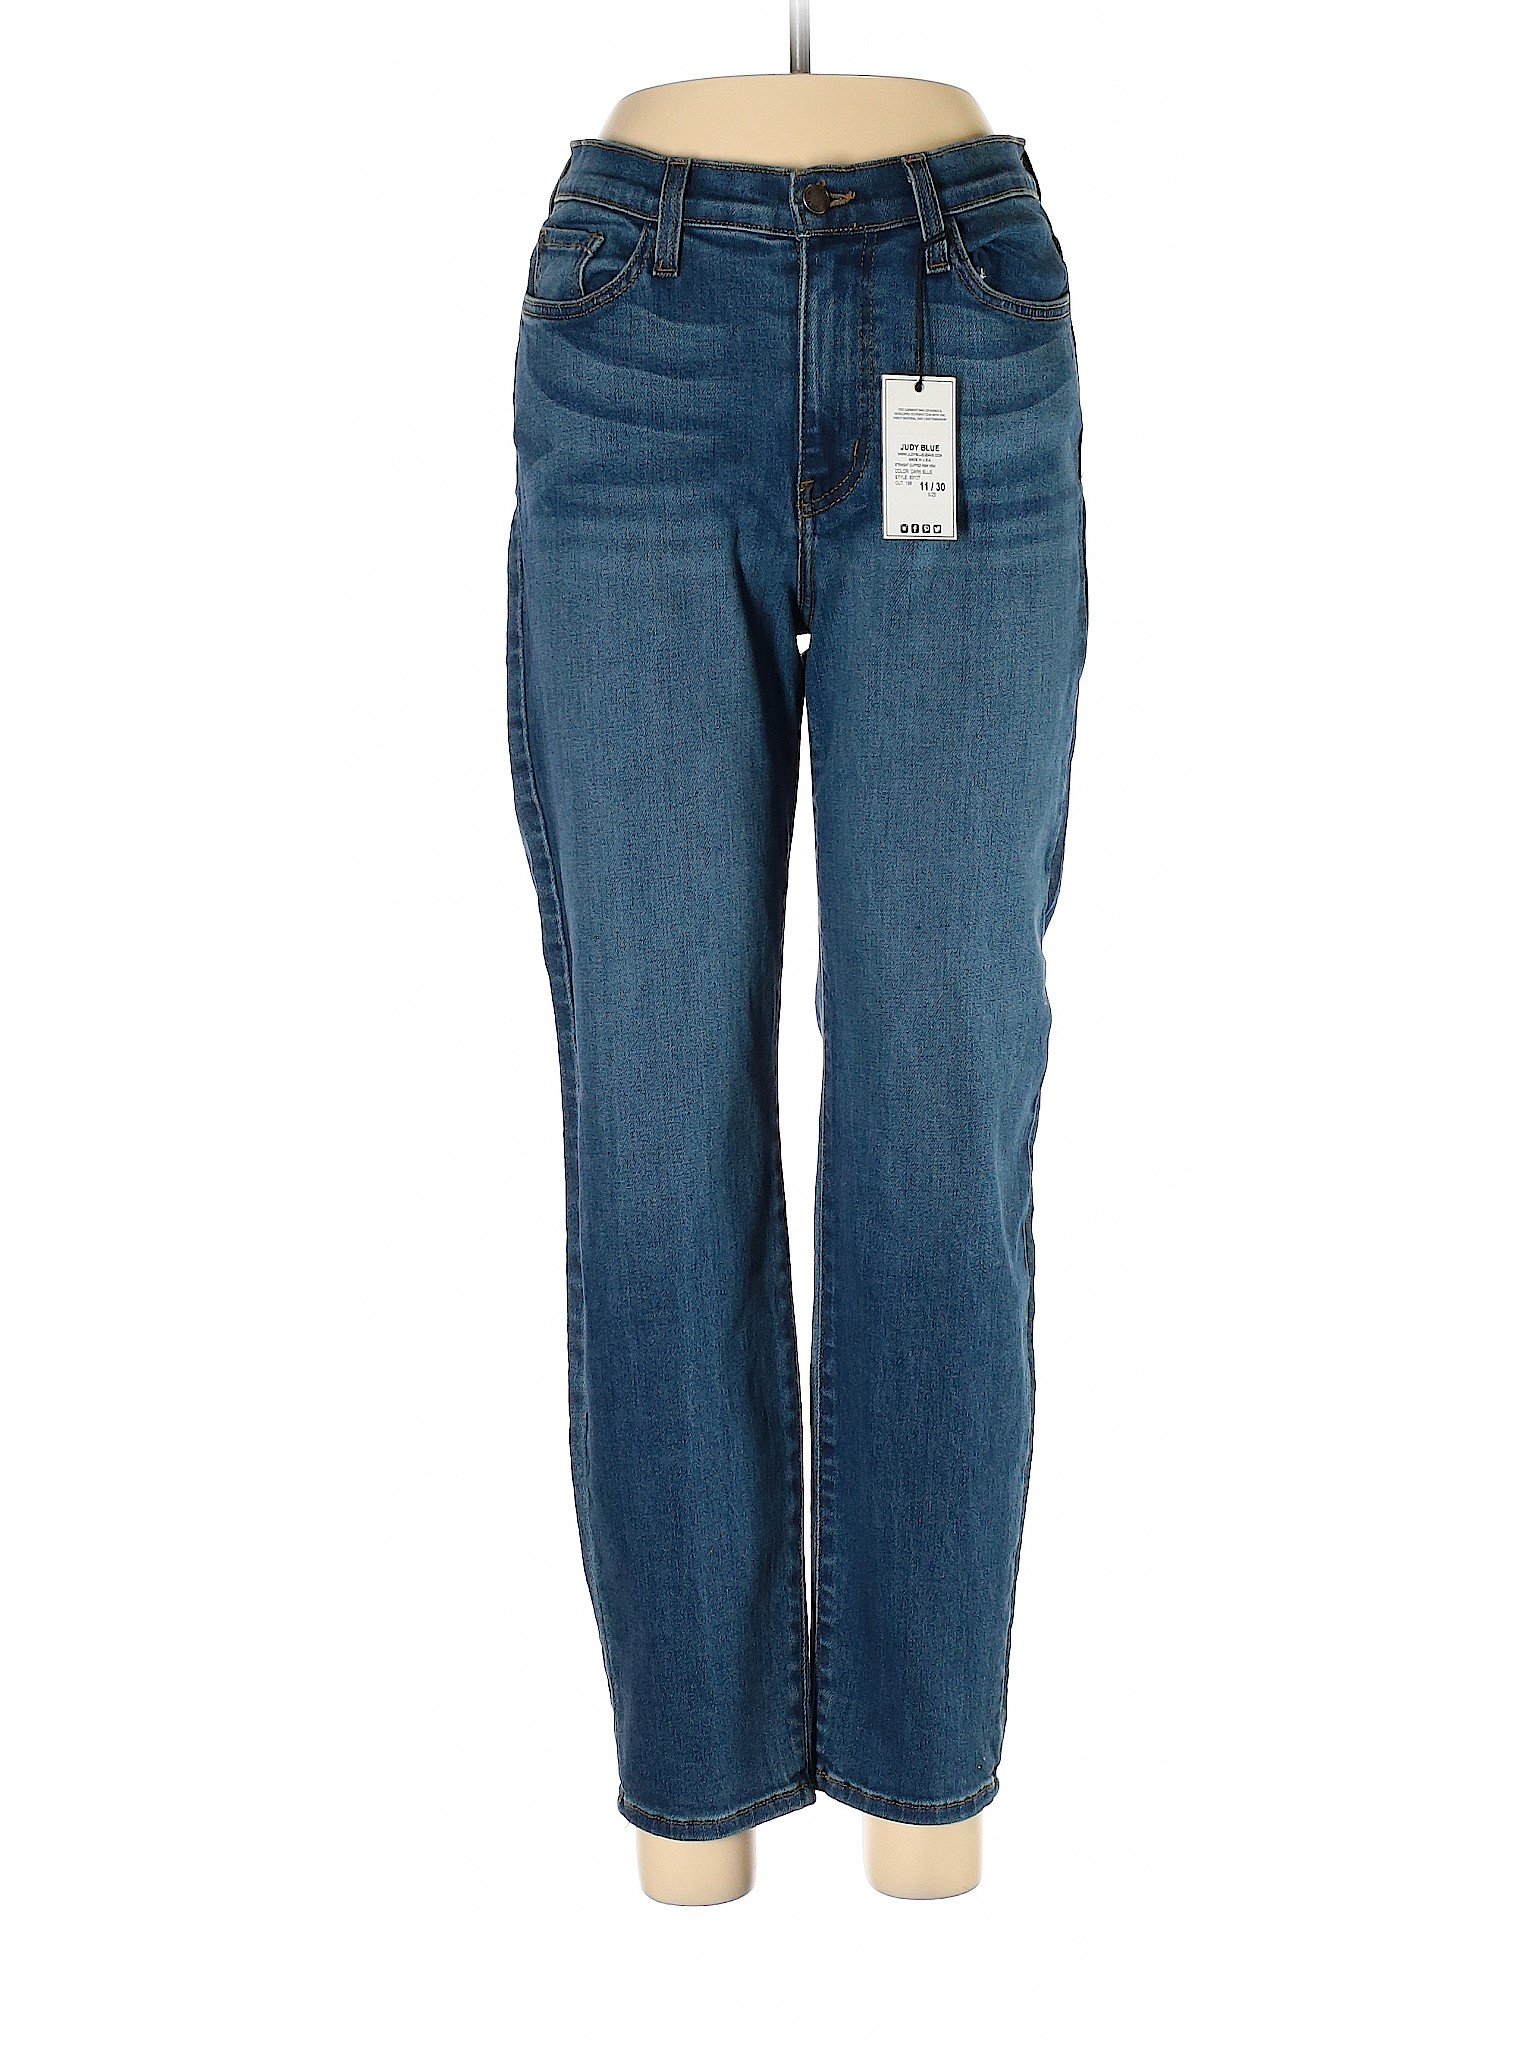 NWT Judy Blue Women Blue Jeans 11 | eBay